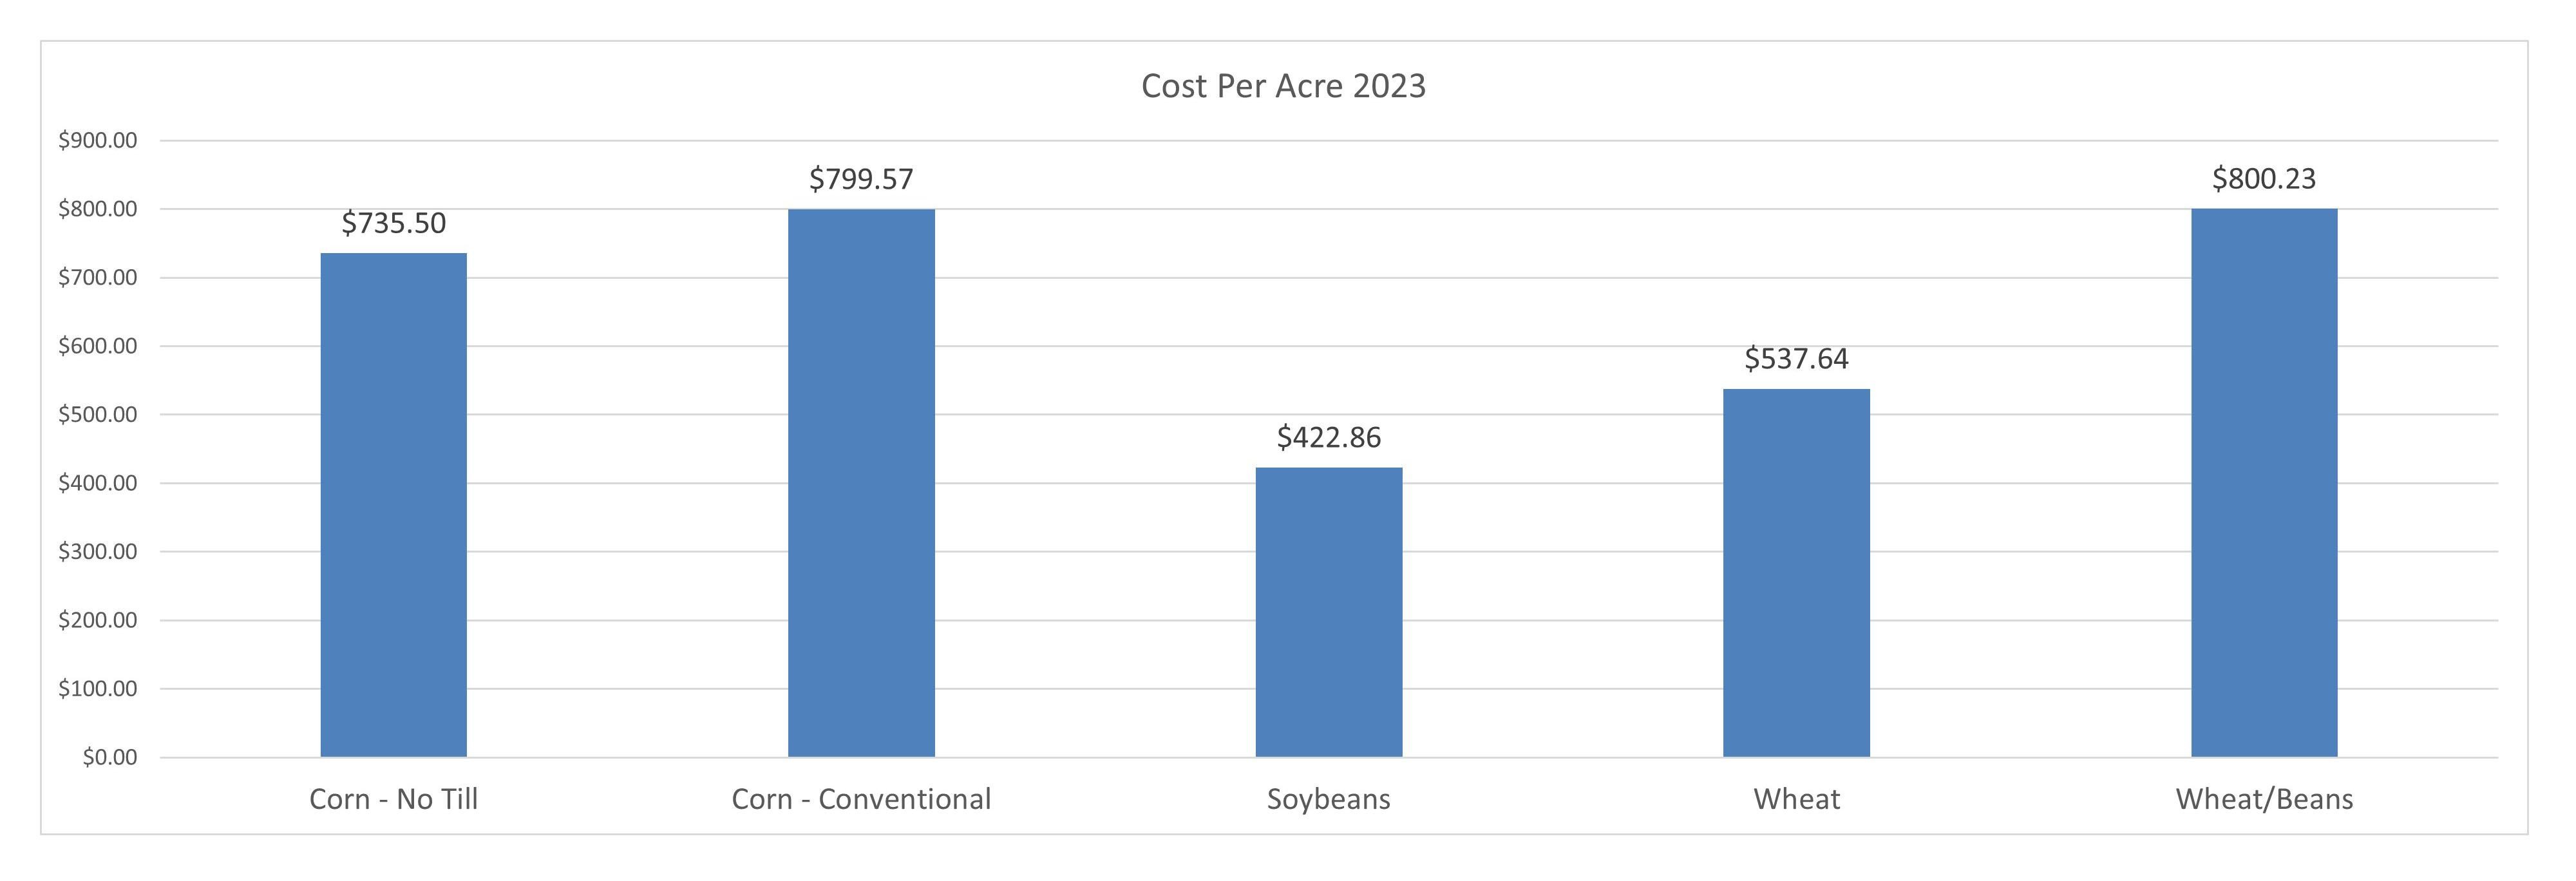 Cost Per Acre 2023 bar graph